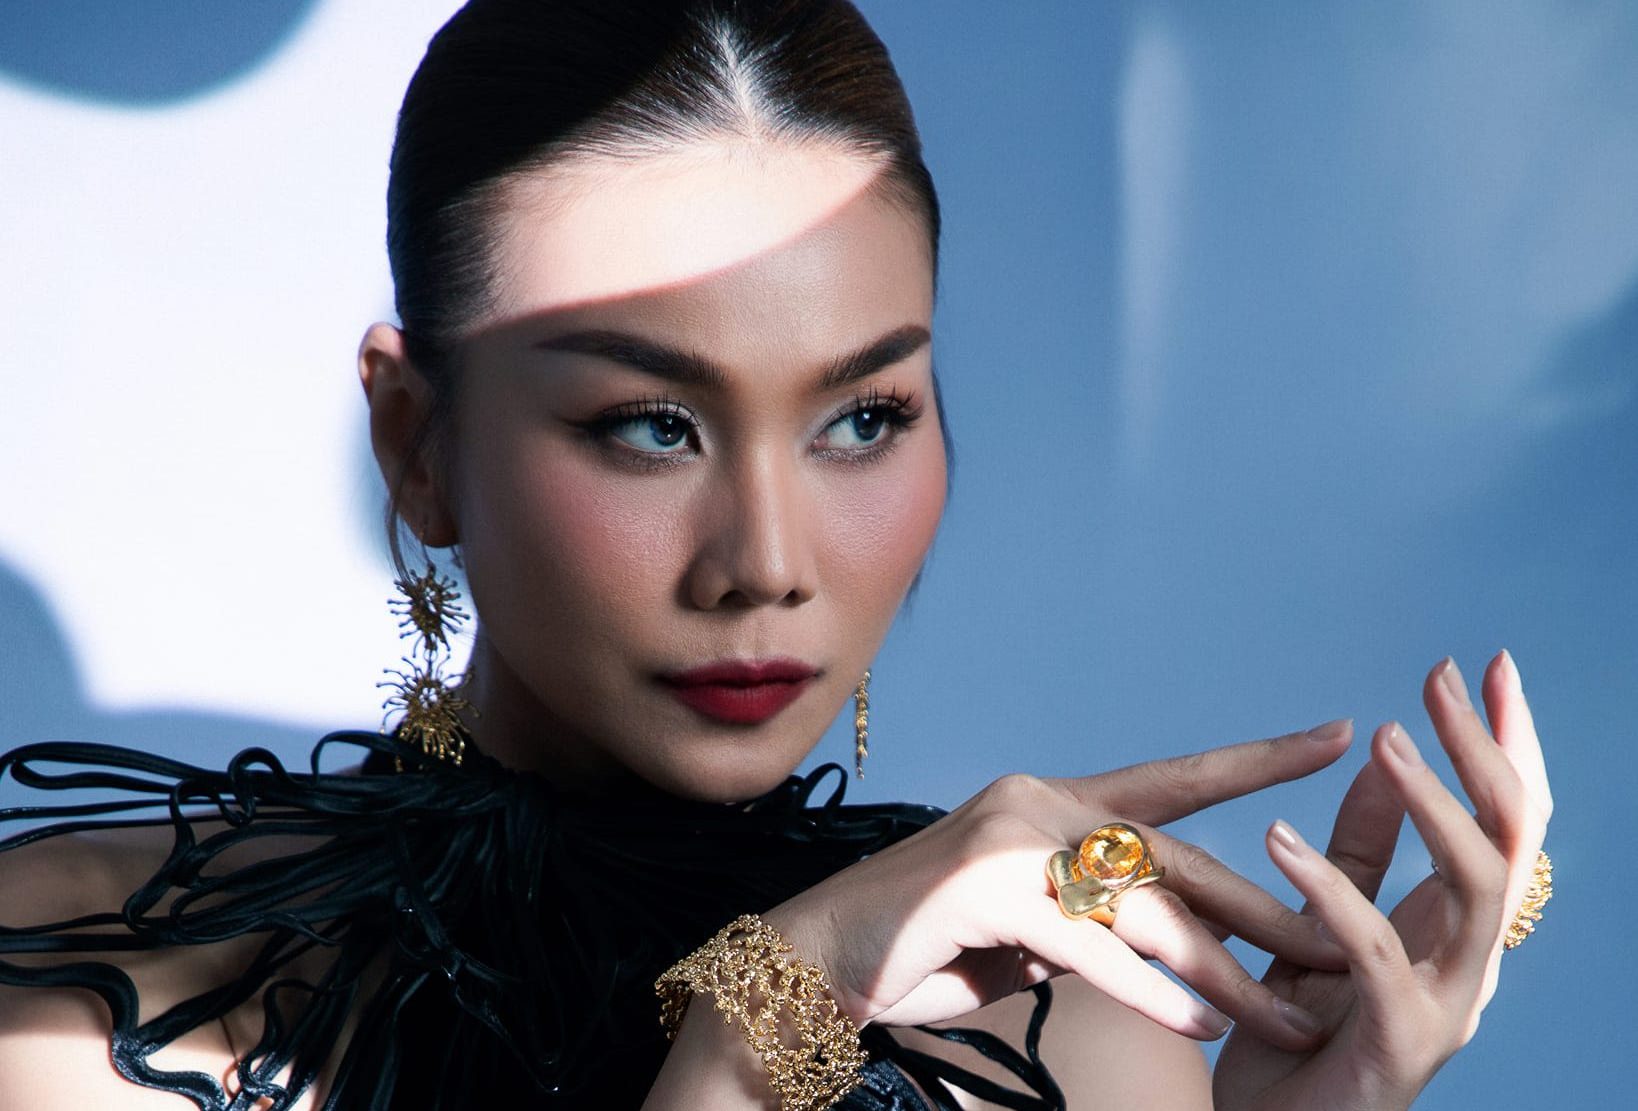 Siêu mẫu Thanh Hằng đầu tư trang phục khi ngồi ghế giám khảo Miss Universe Vietnam